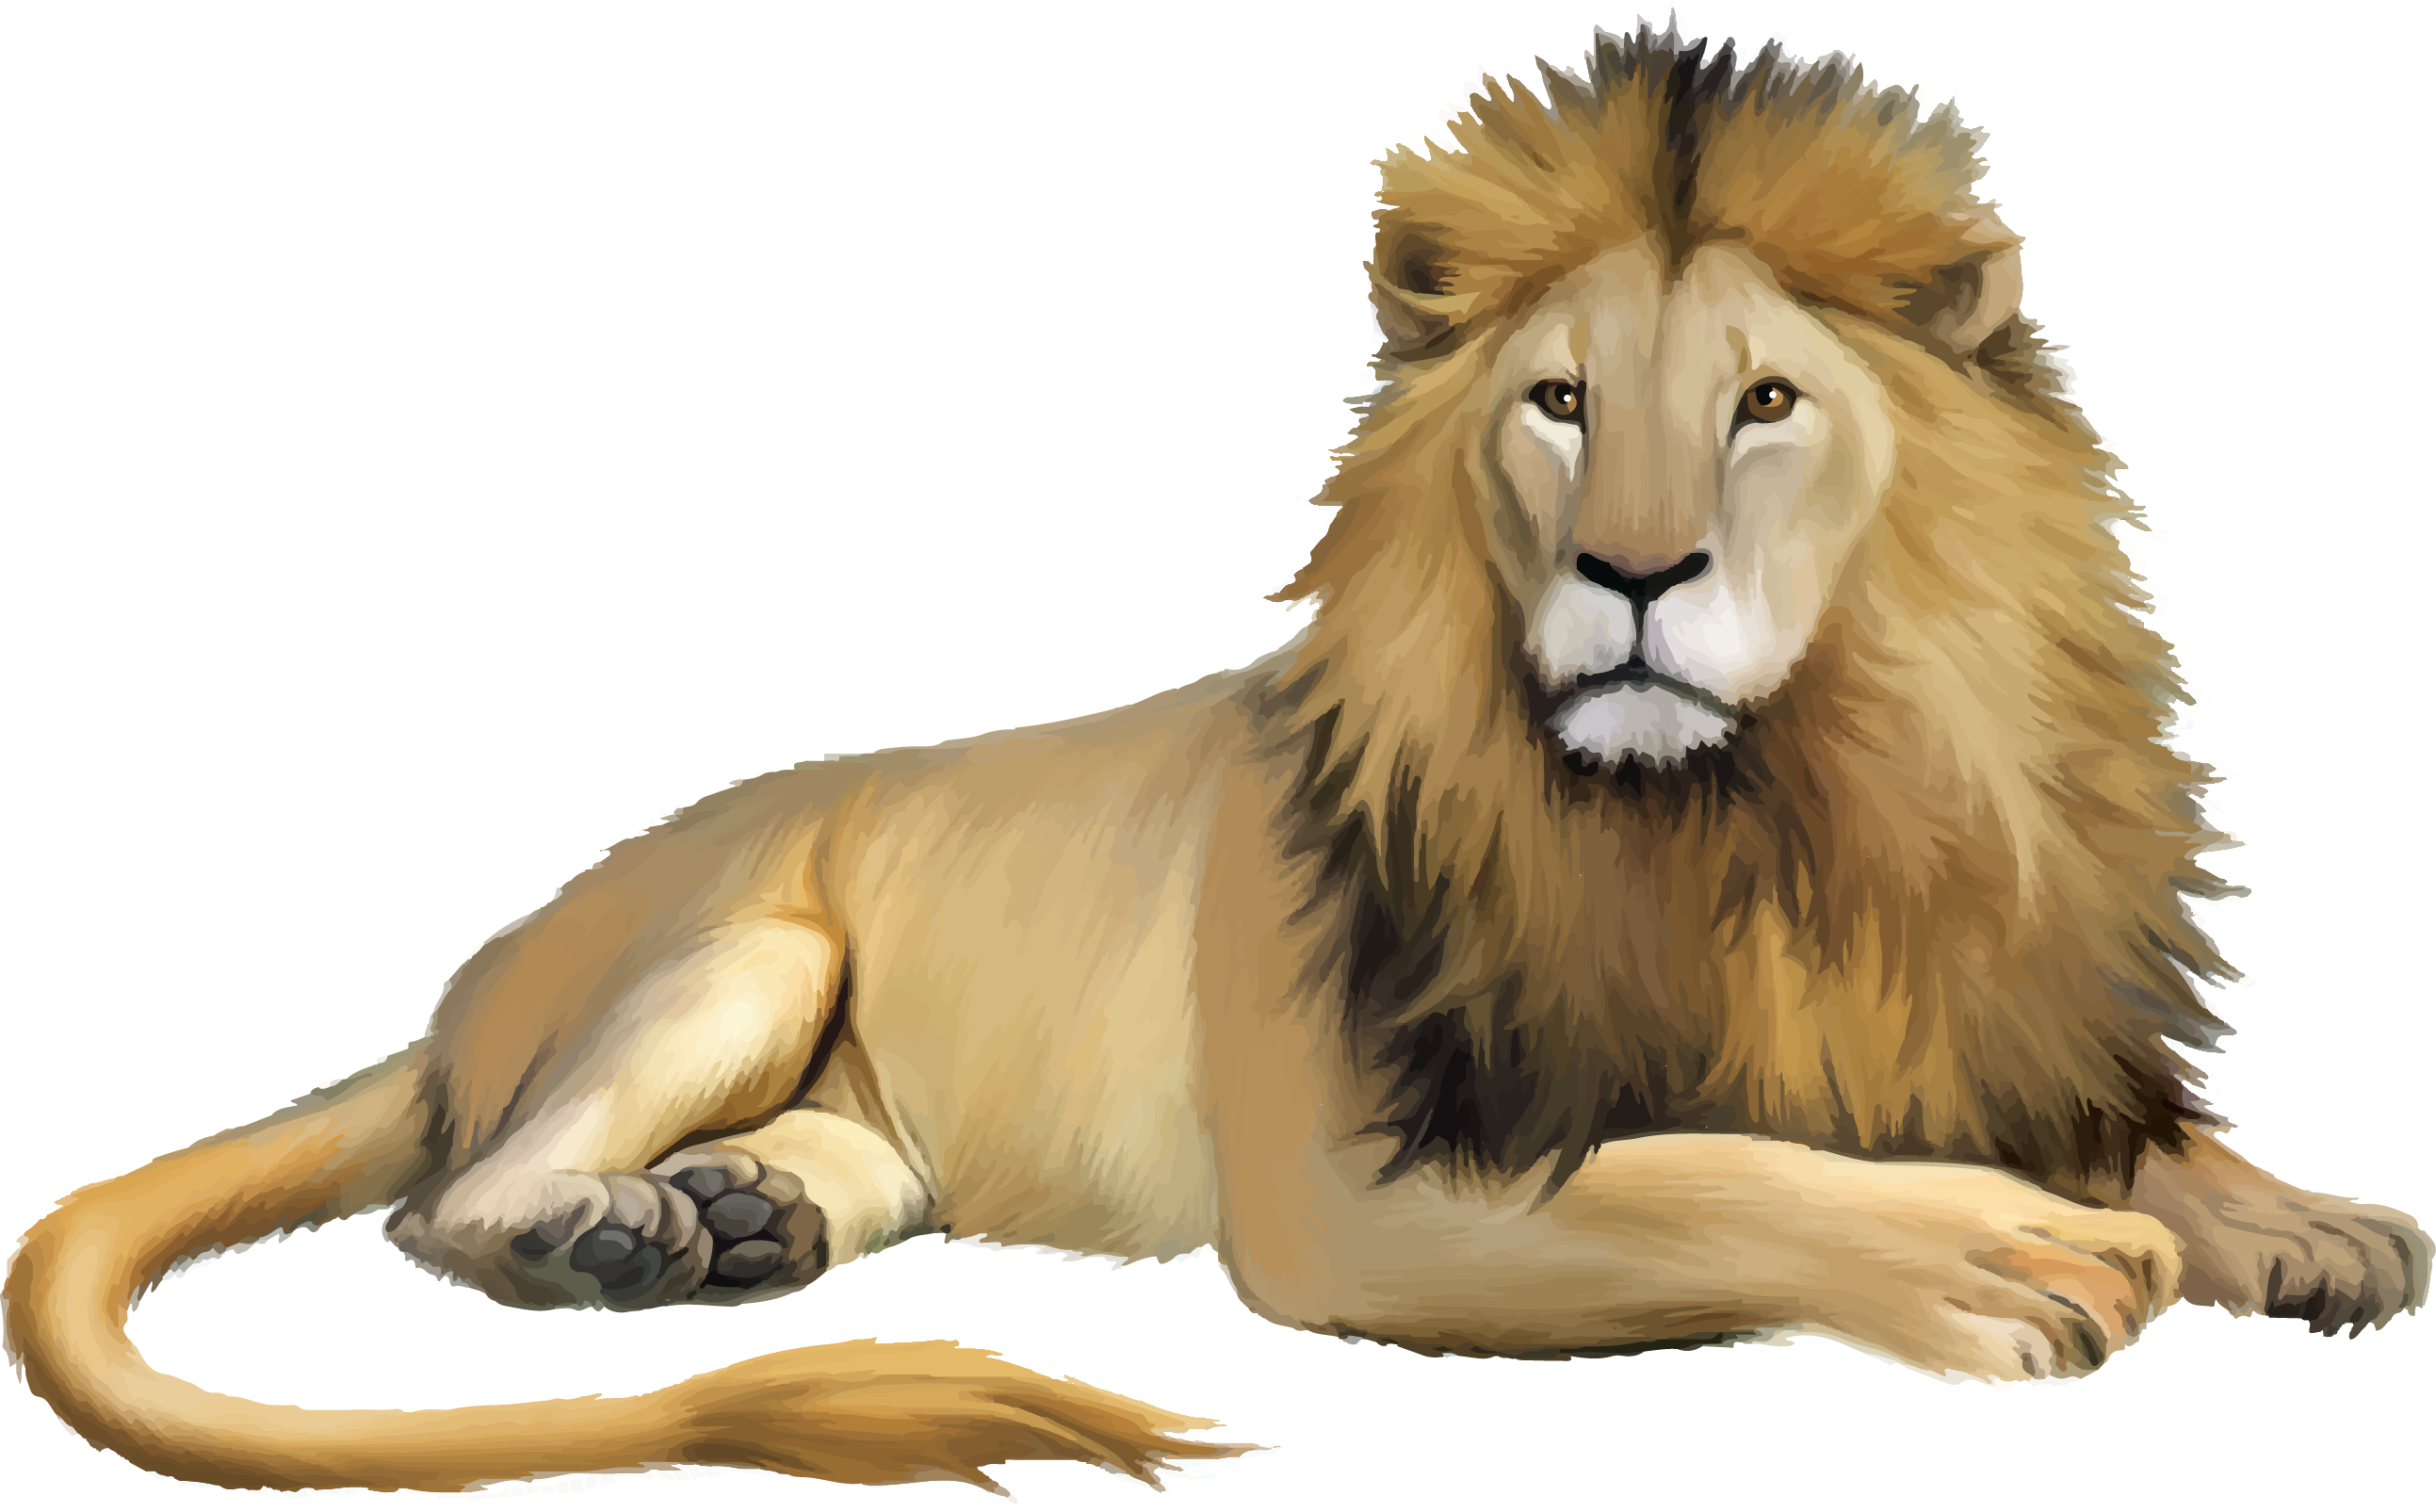 Lion Cartoon - lion png download - 2586*1605 - Free Transparent Lion png  Download. - Clip Art Library